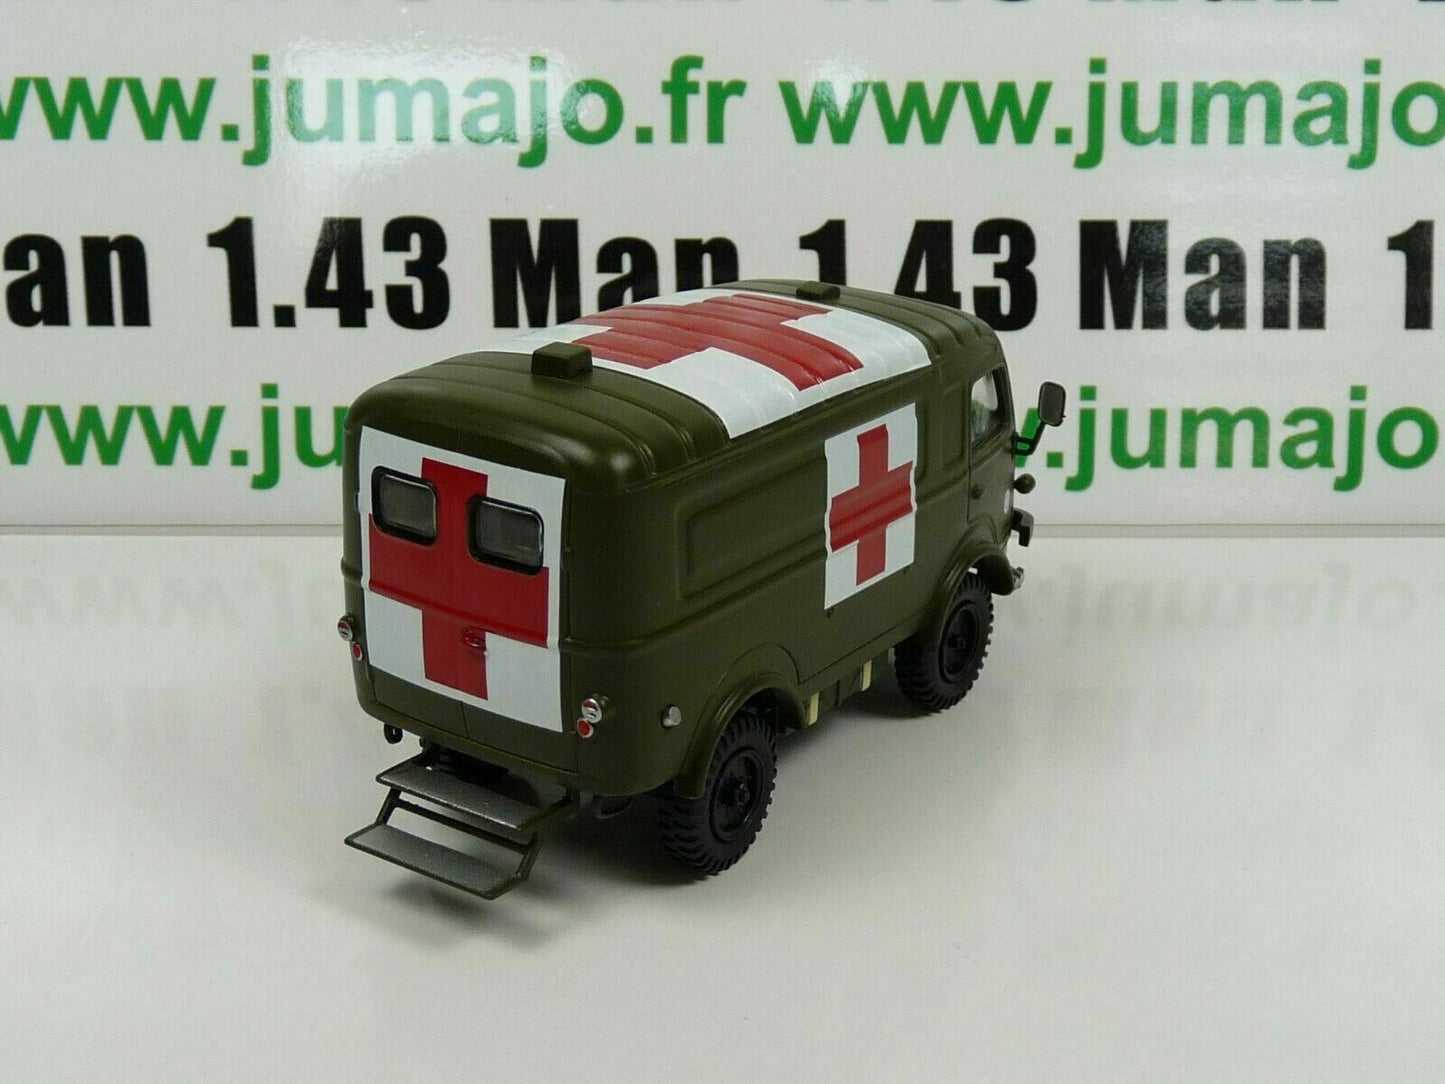 Lot VMF1 + soldat DIREKT IXO 1/43 Renault 1000 Kg R2087 croix rouge + 3 soldats